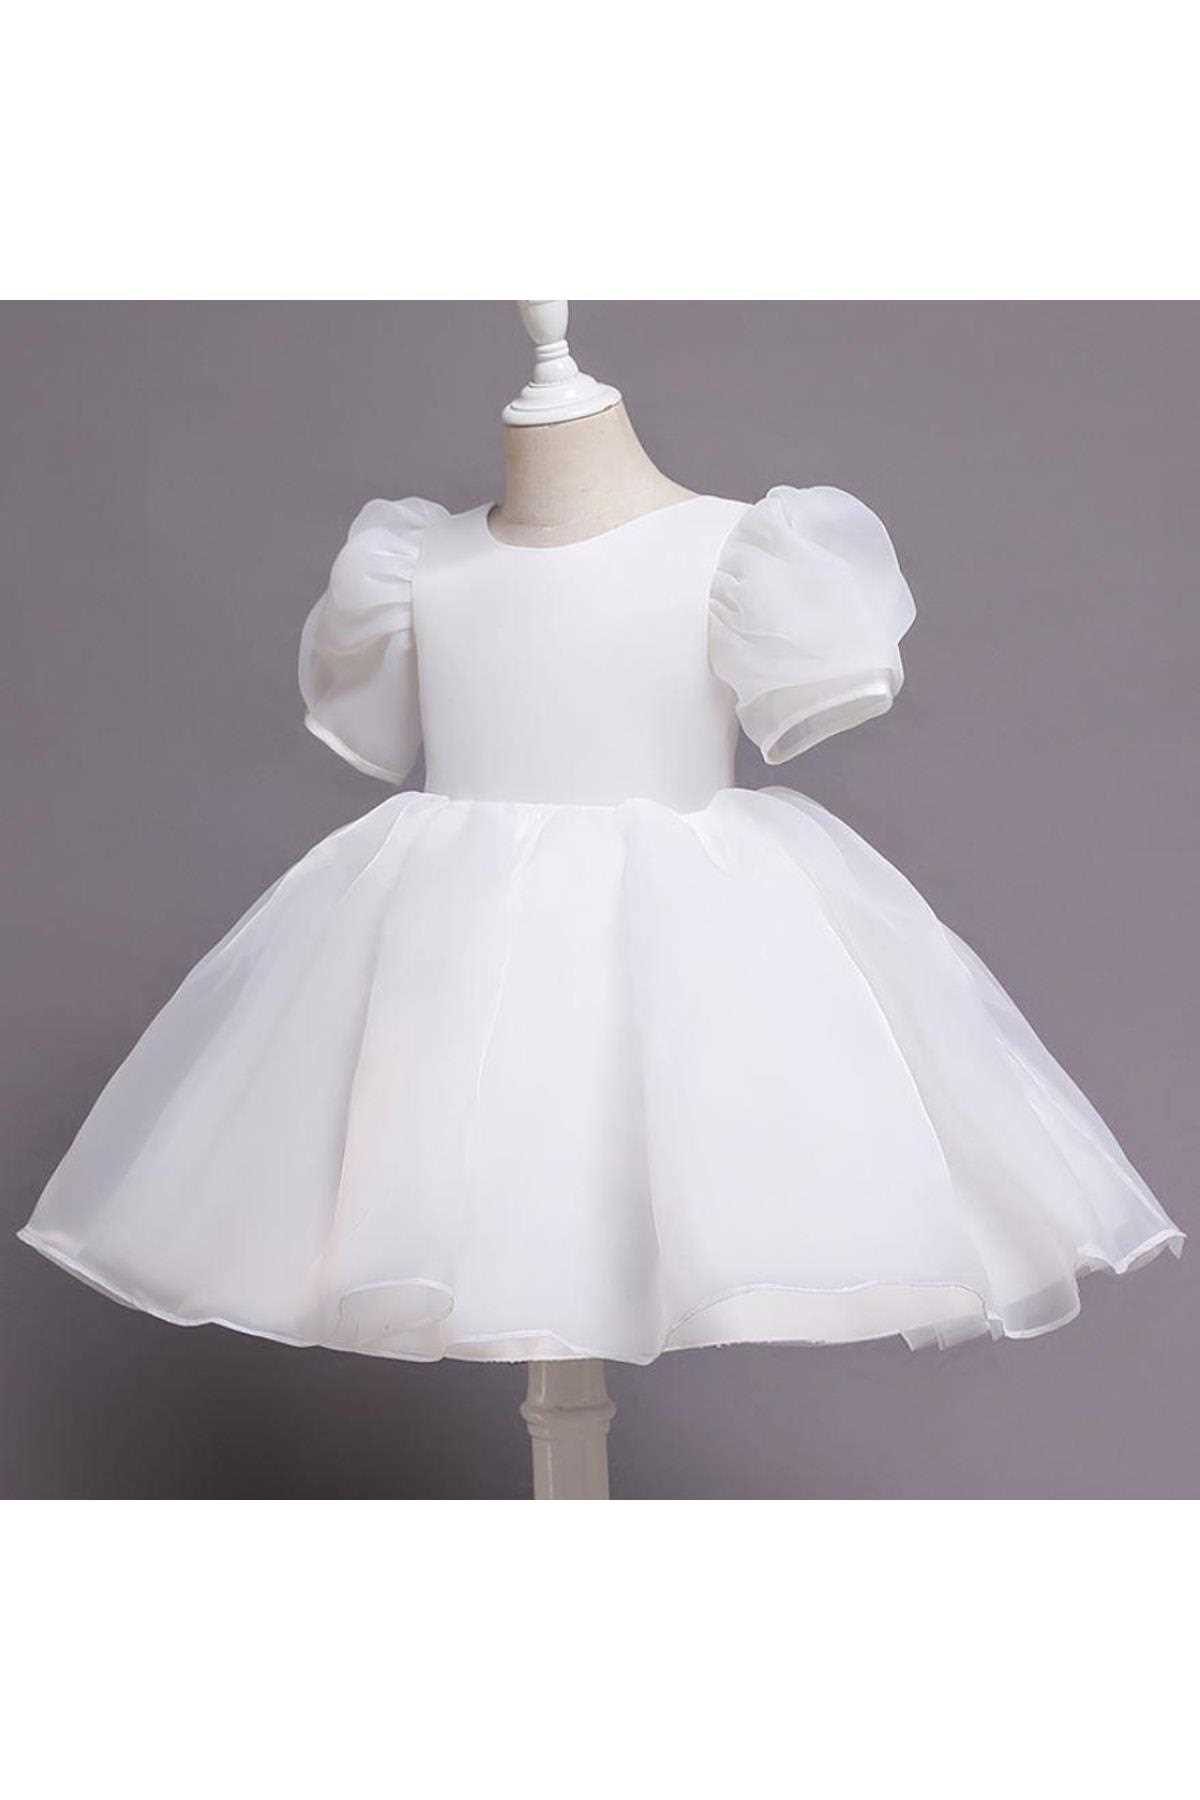 خرید اینترنتی لباس مجلسی خاص دخترانه شیک Mashotrend رنگ سفید ty313514606